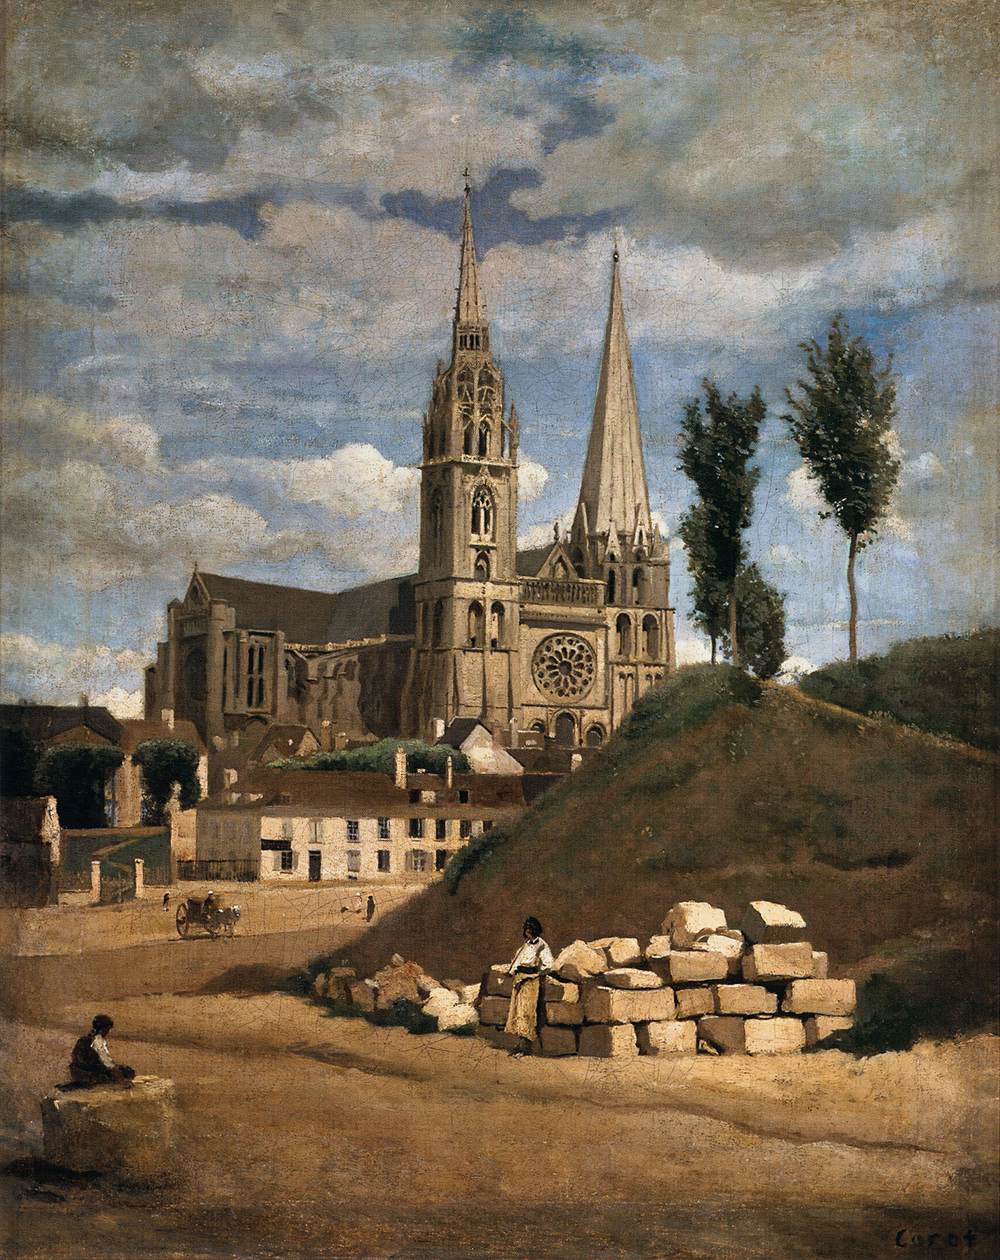 La Cattedrale di Chartres